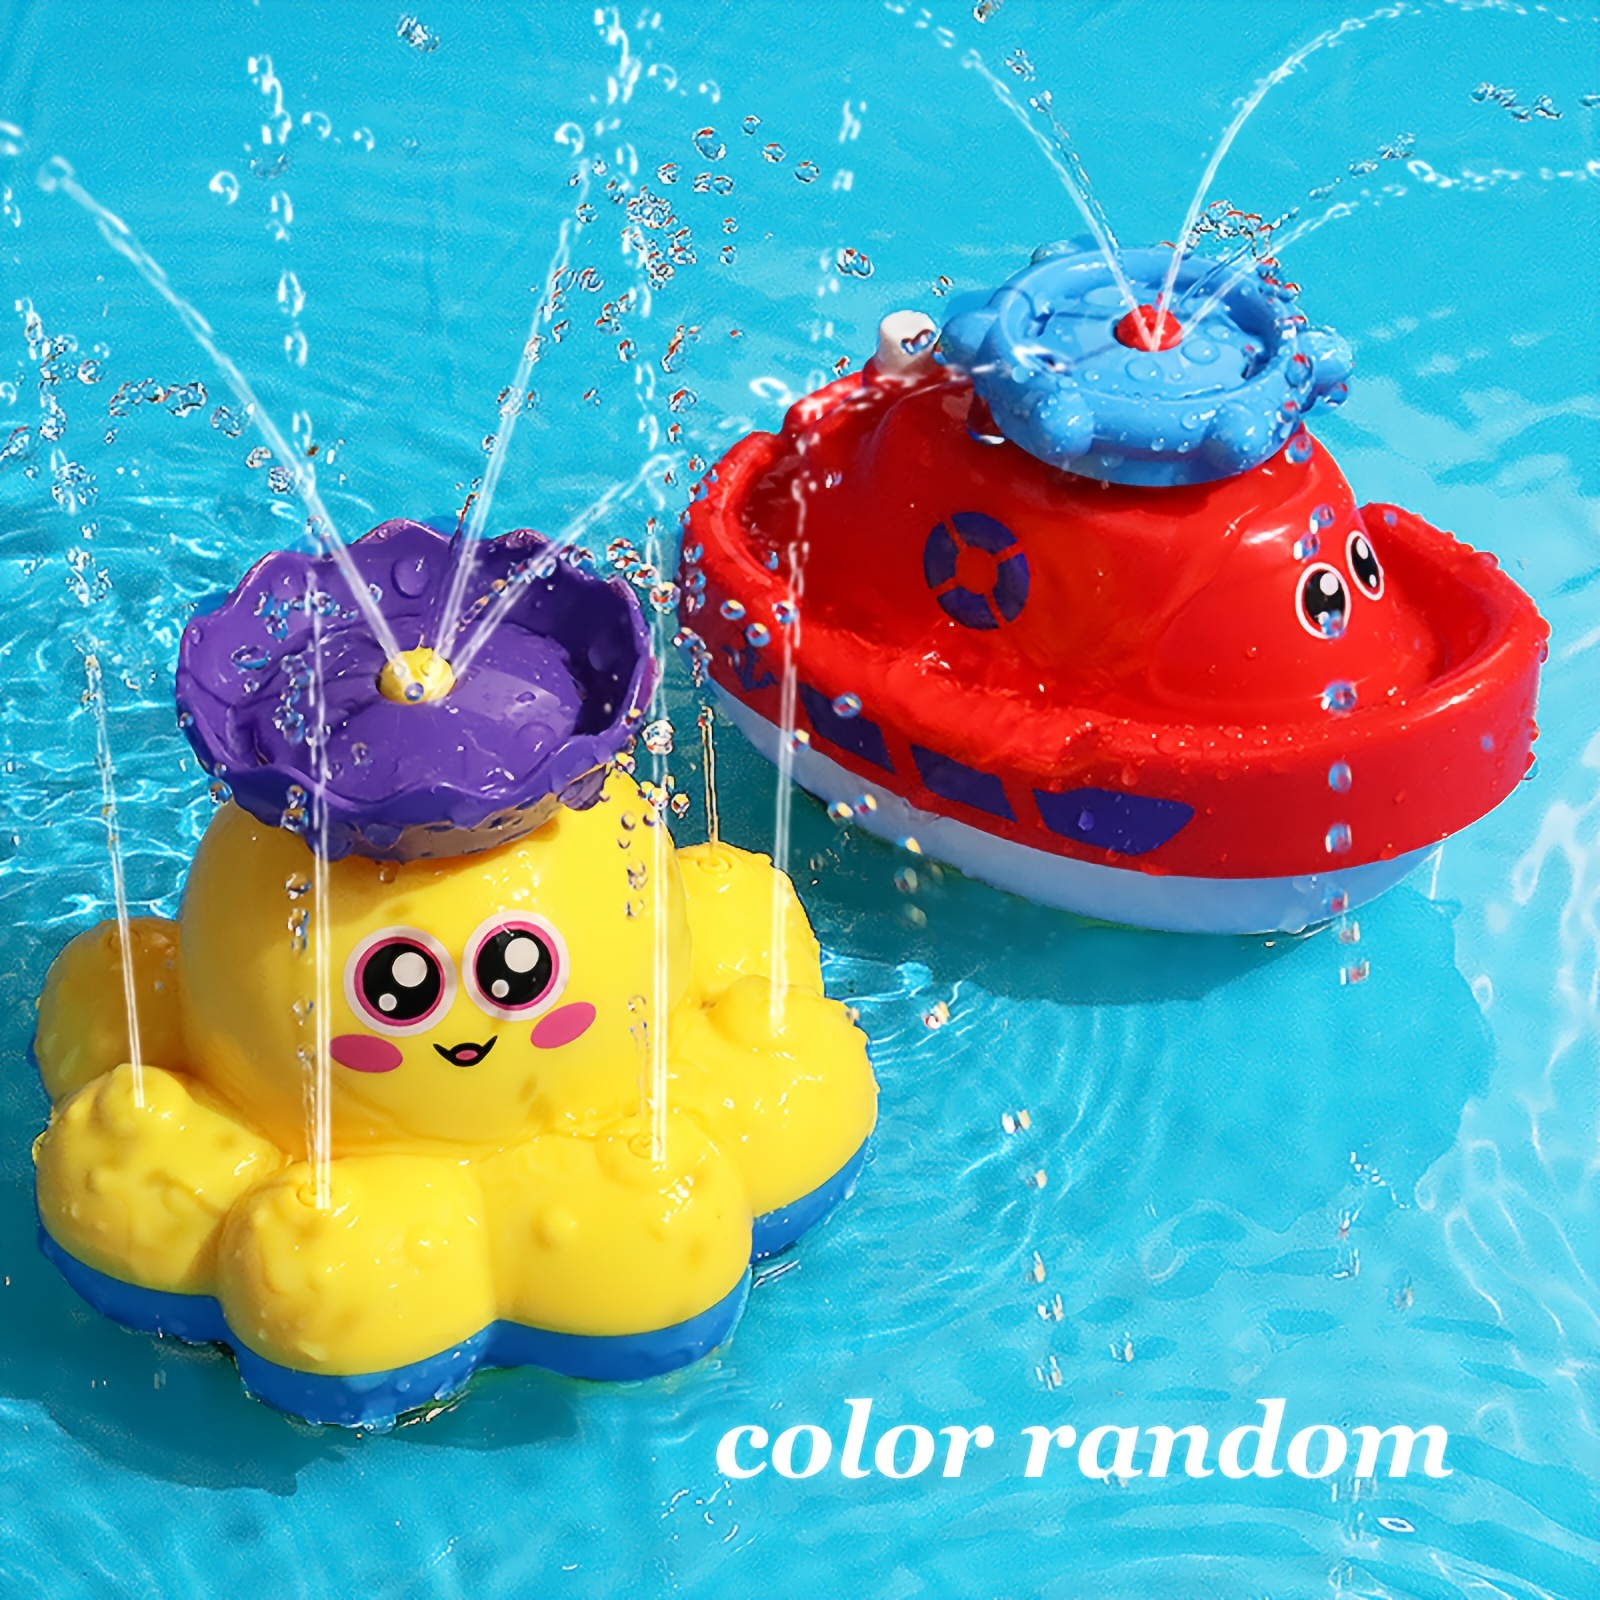 DPTOYZ Baby Bath Toys, Sea Lion Fancy Spin Spray Water Bath Toys for Toddlers 1-3, Bathtub Shower Toys for Kids Ages 4-8, Sensory Bath Toys for